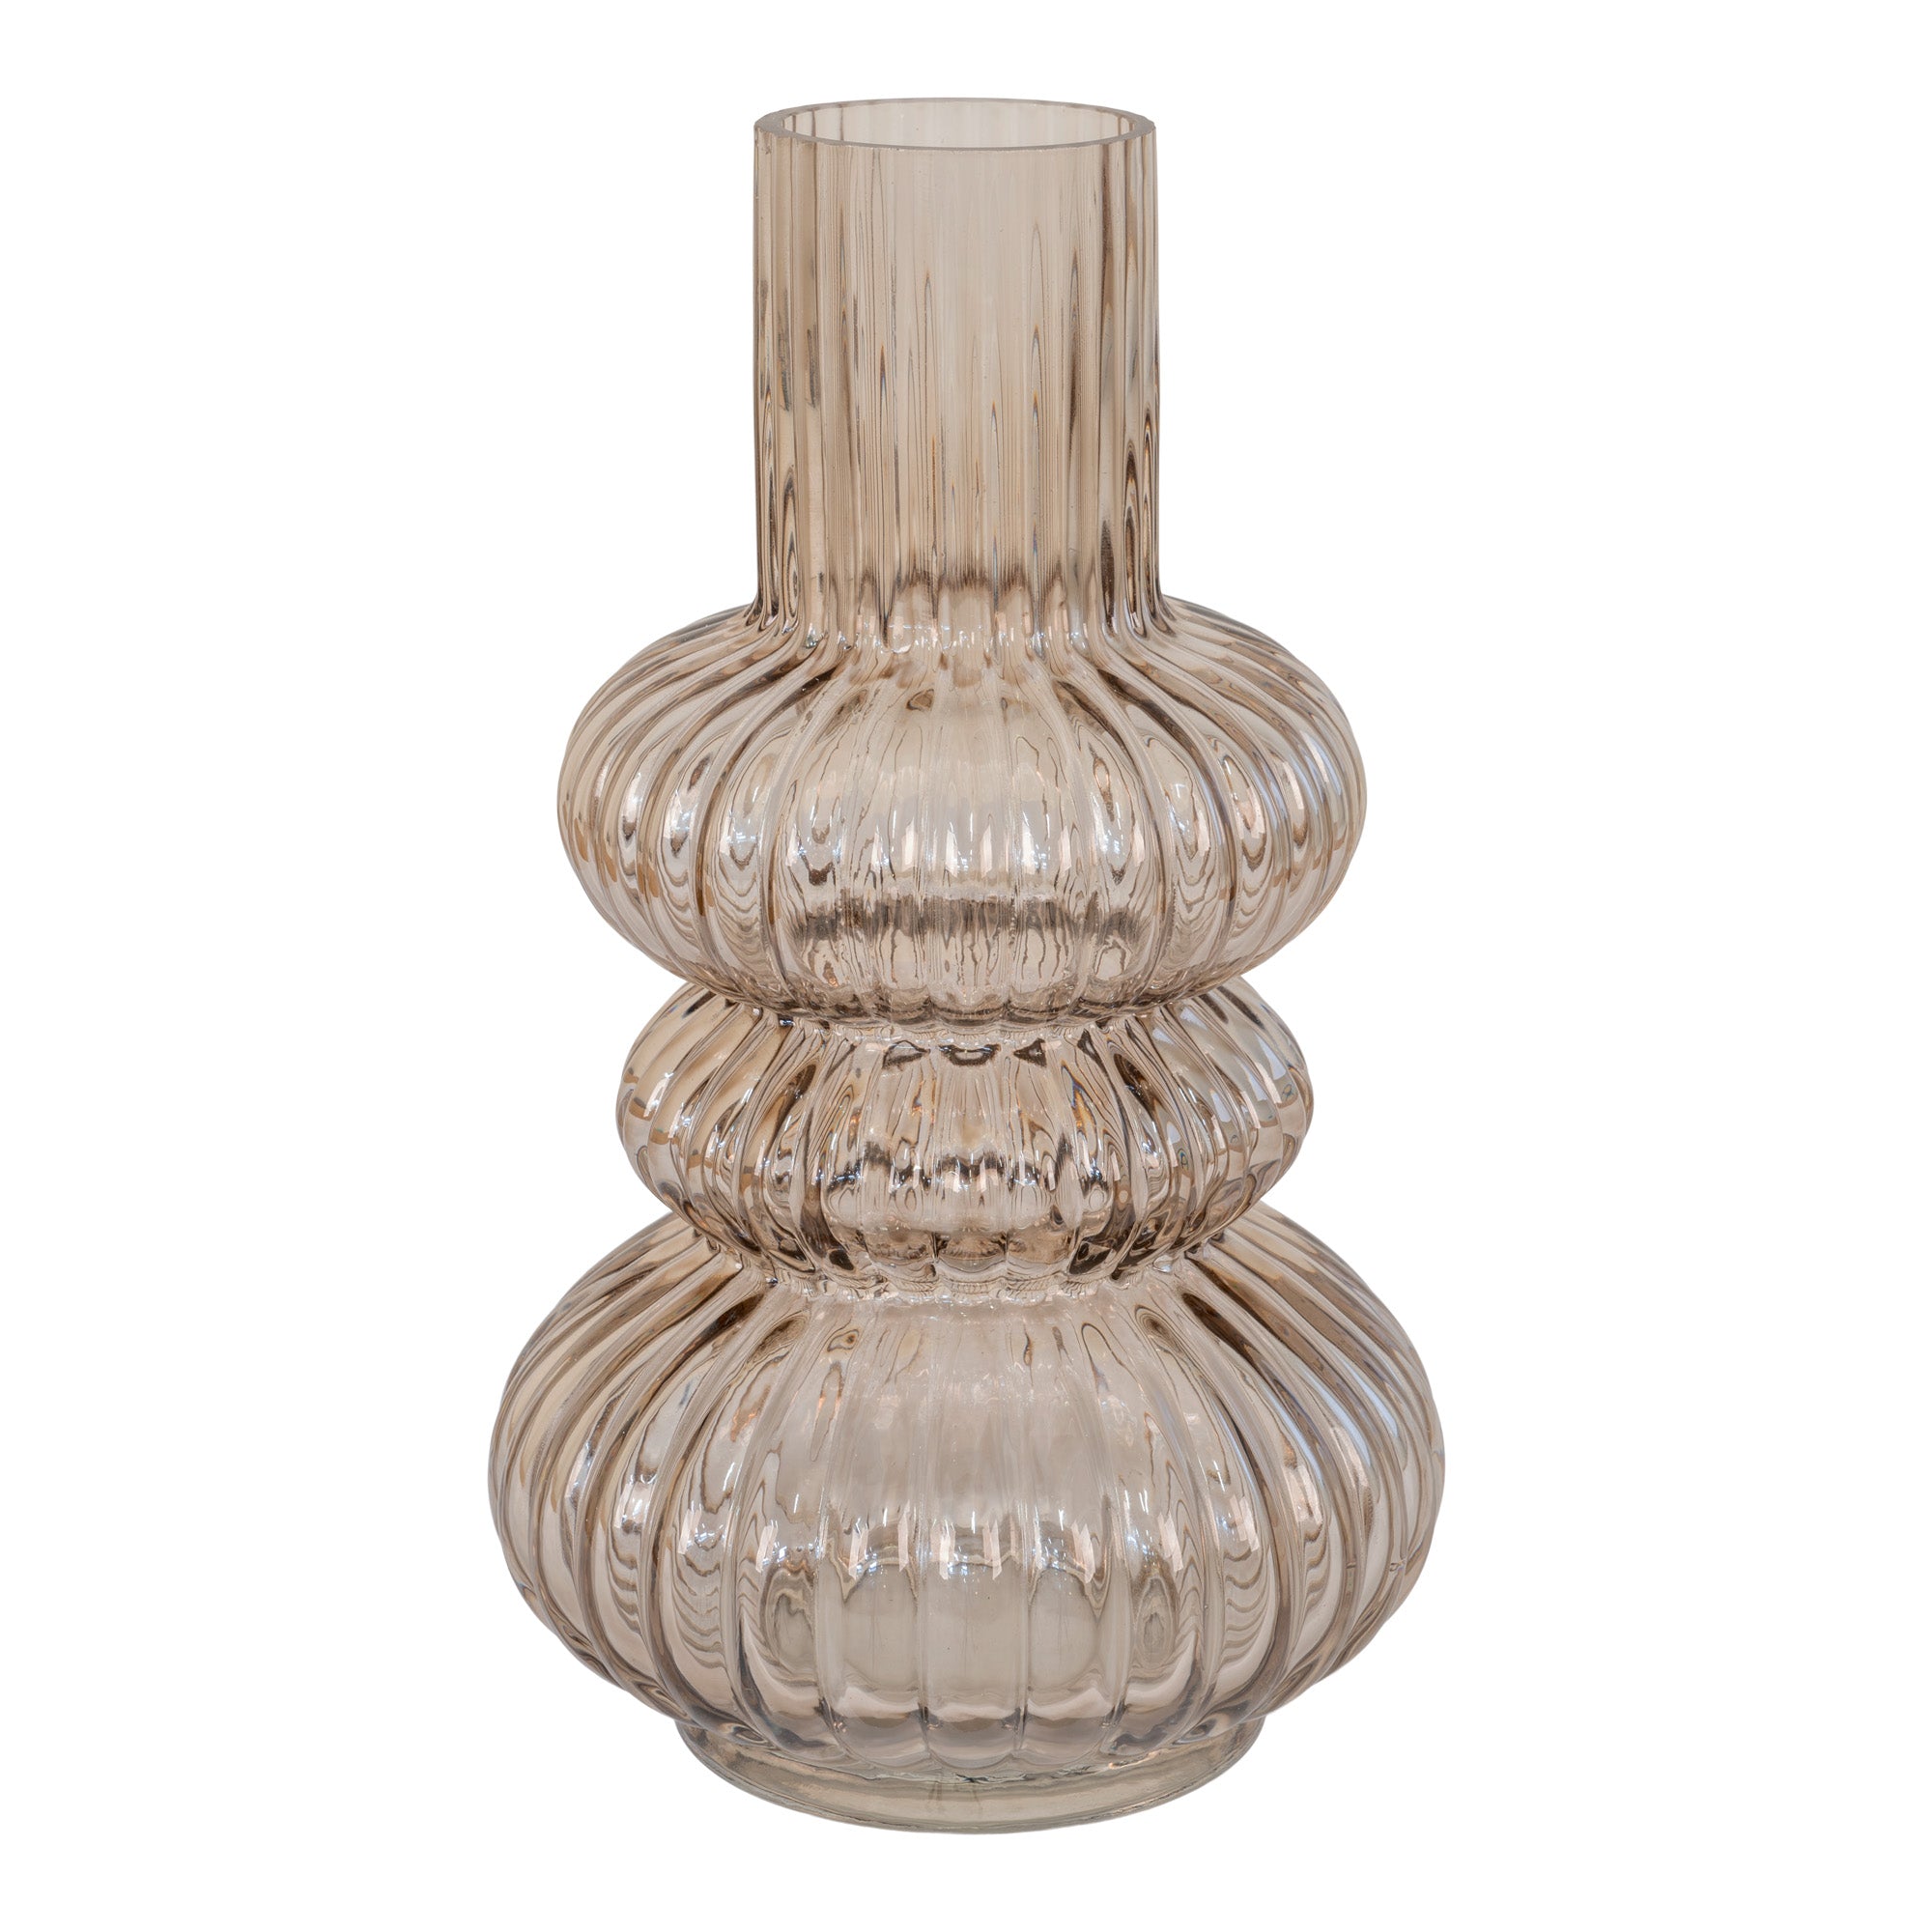 Billede af Vase - Vase i mundblæst glas, røget, rundt, Ø15x25 cm hos Lammeuld.dk